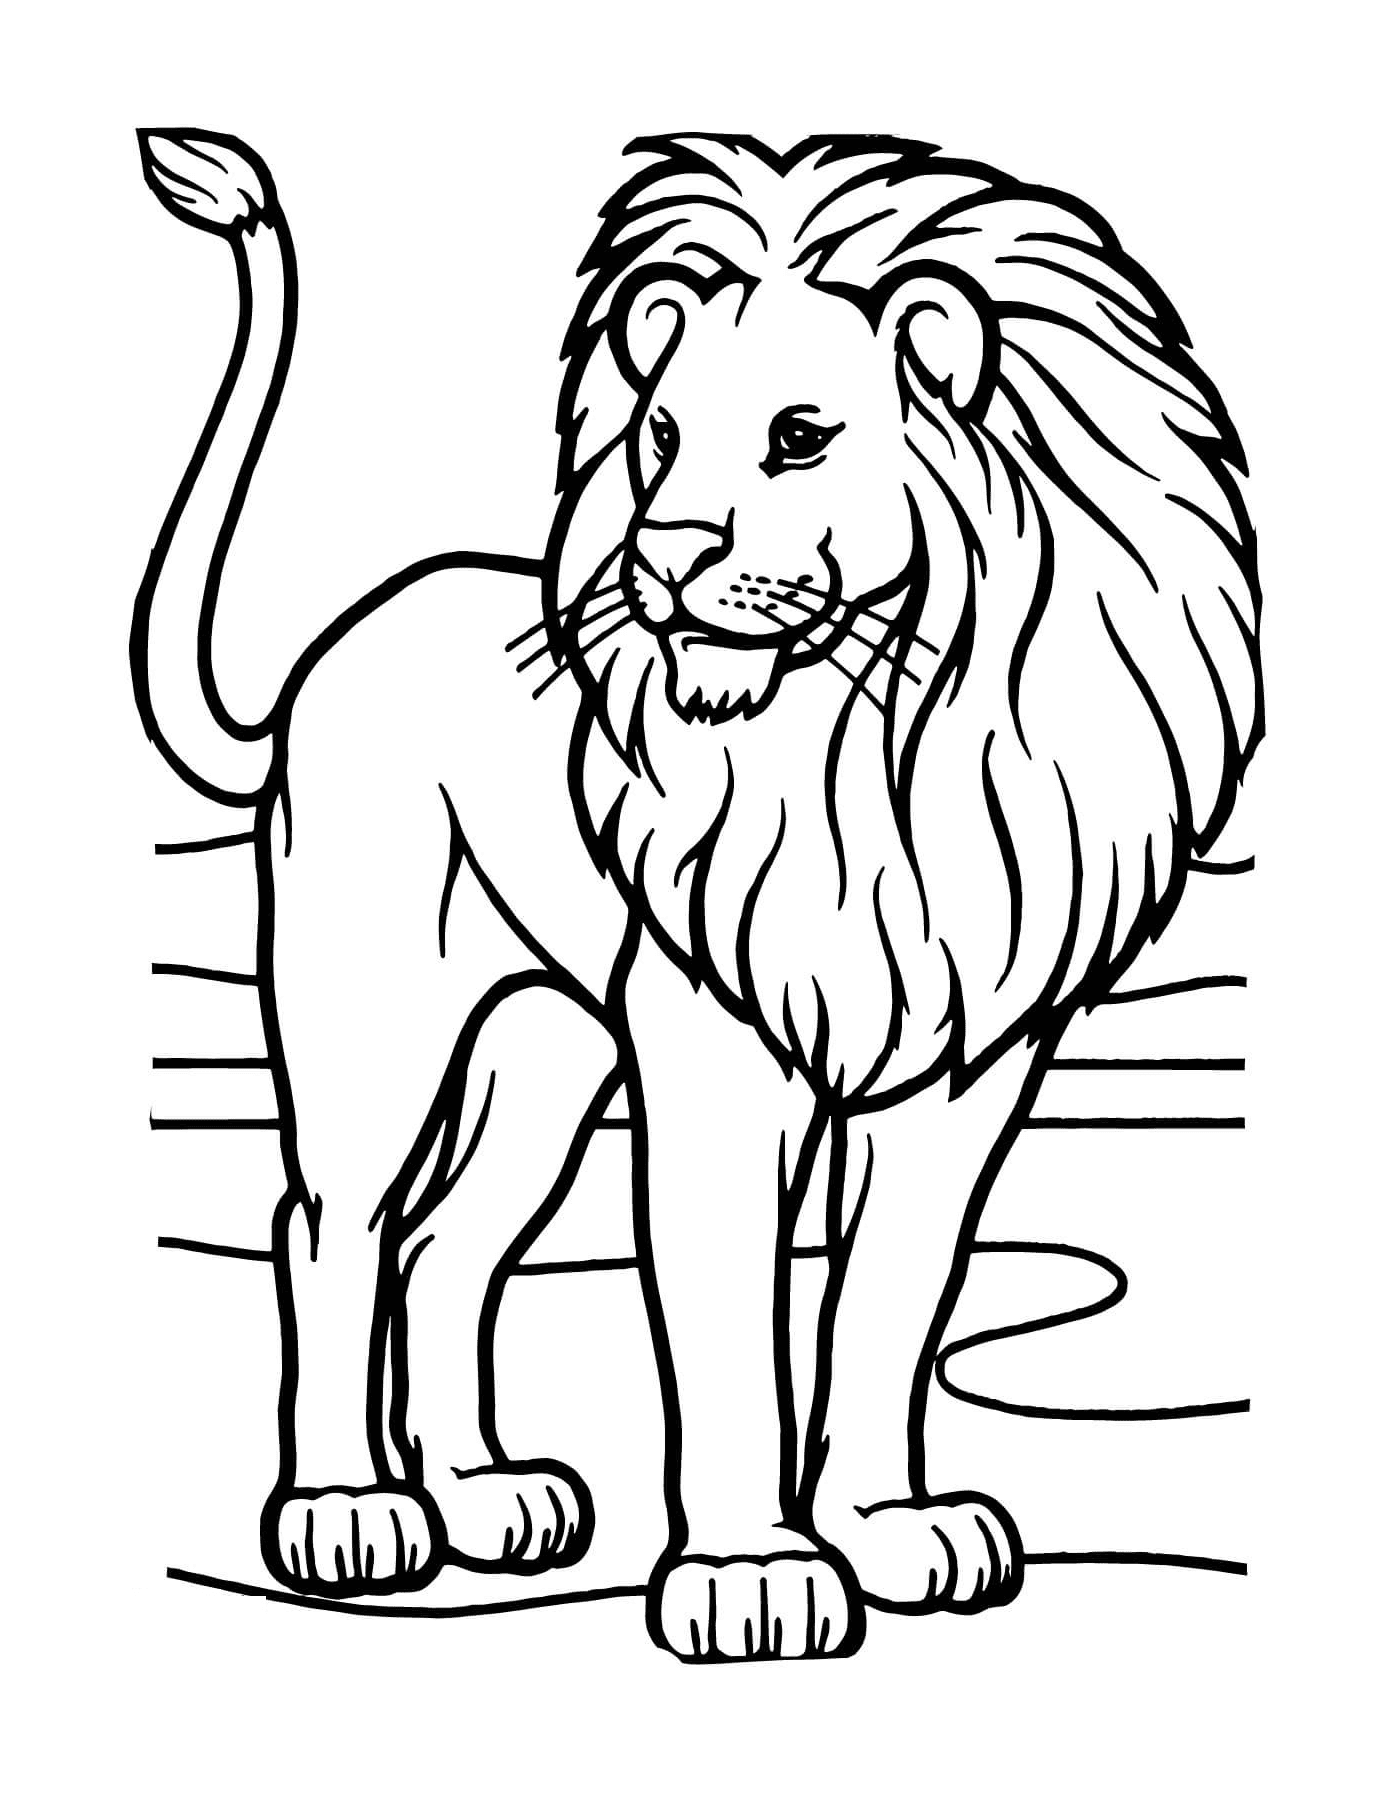  Leão africano selvagem e poderoso 